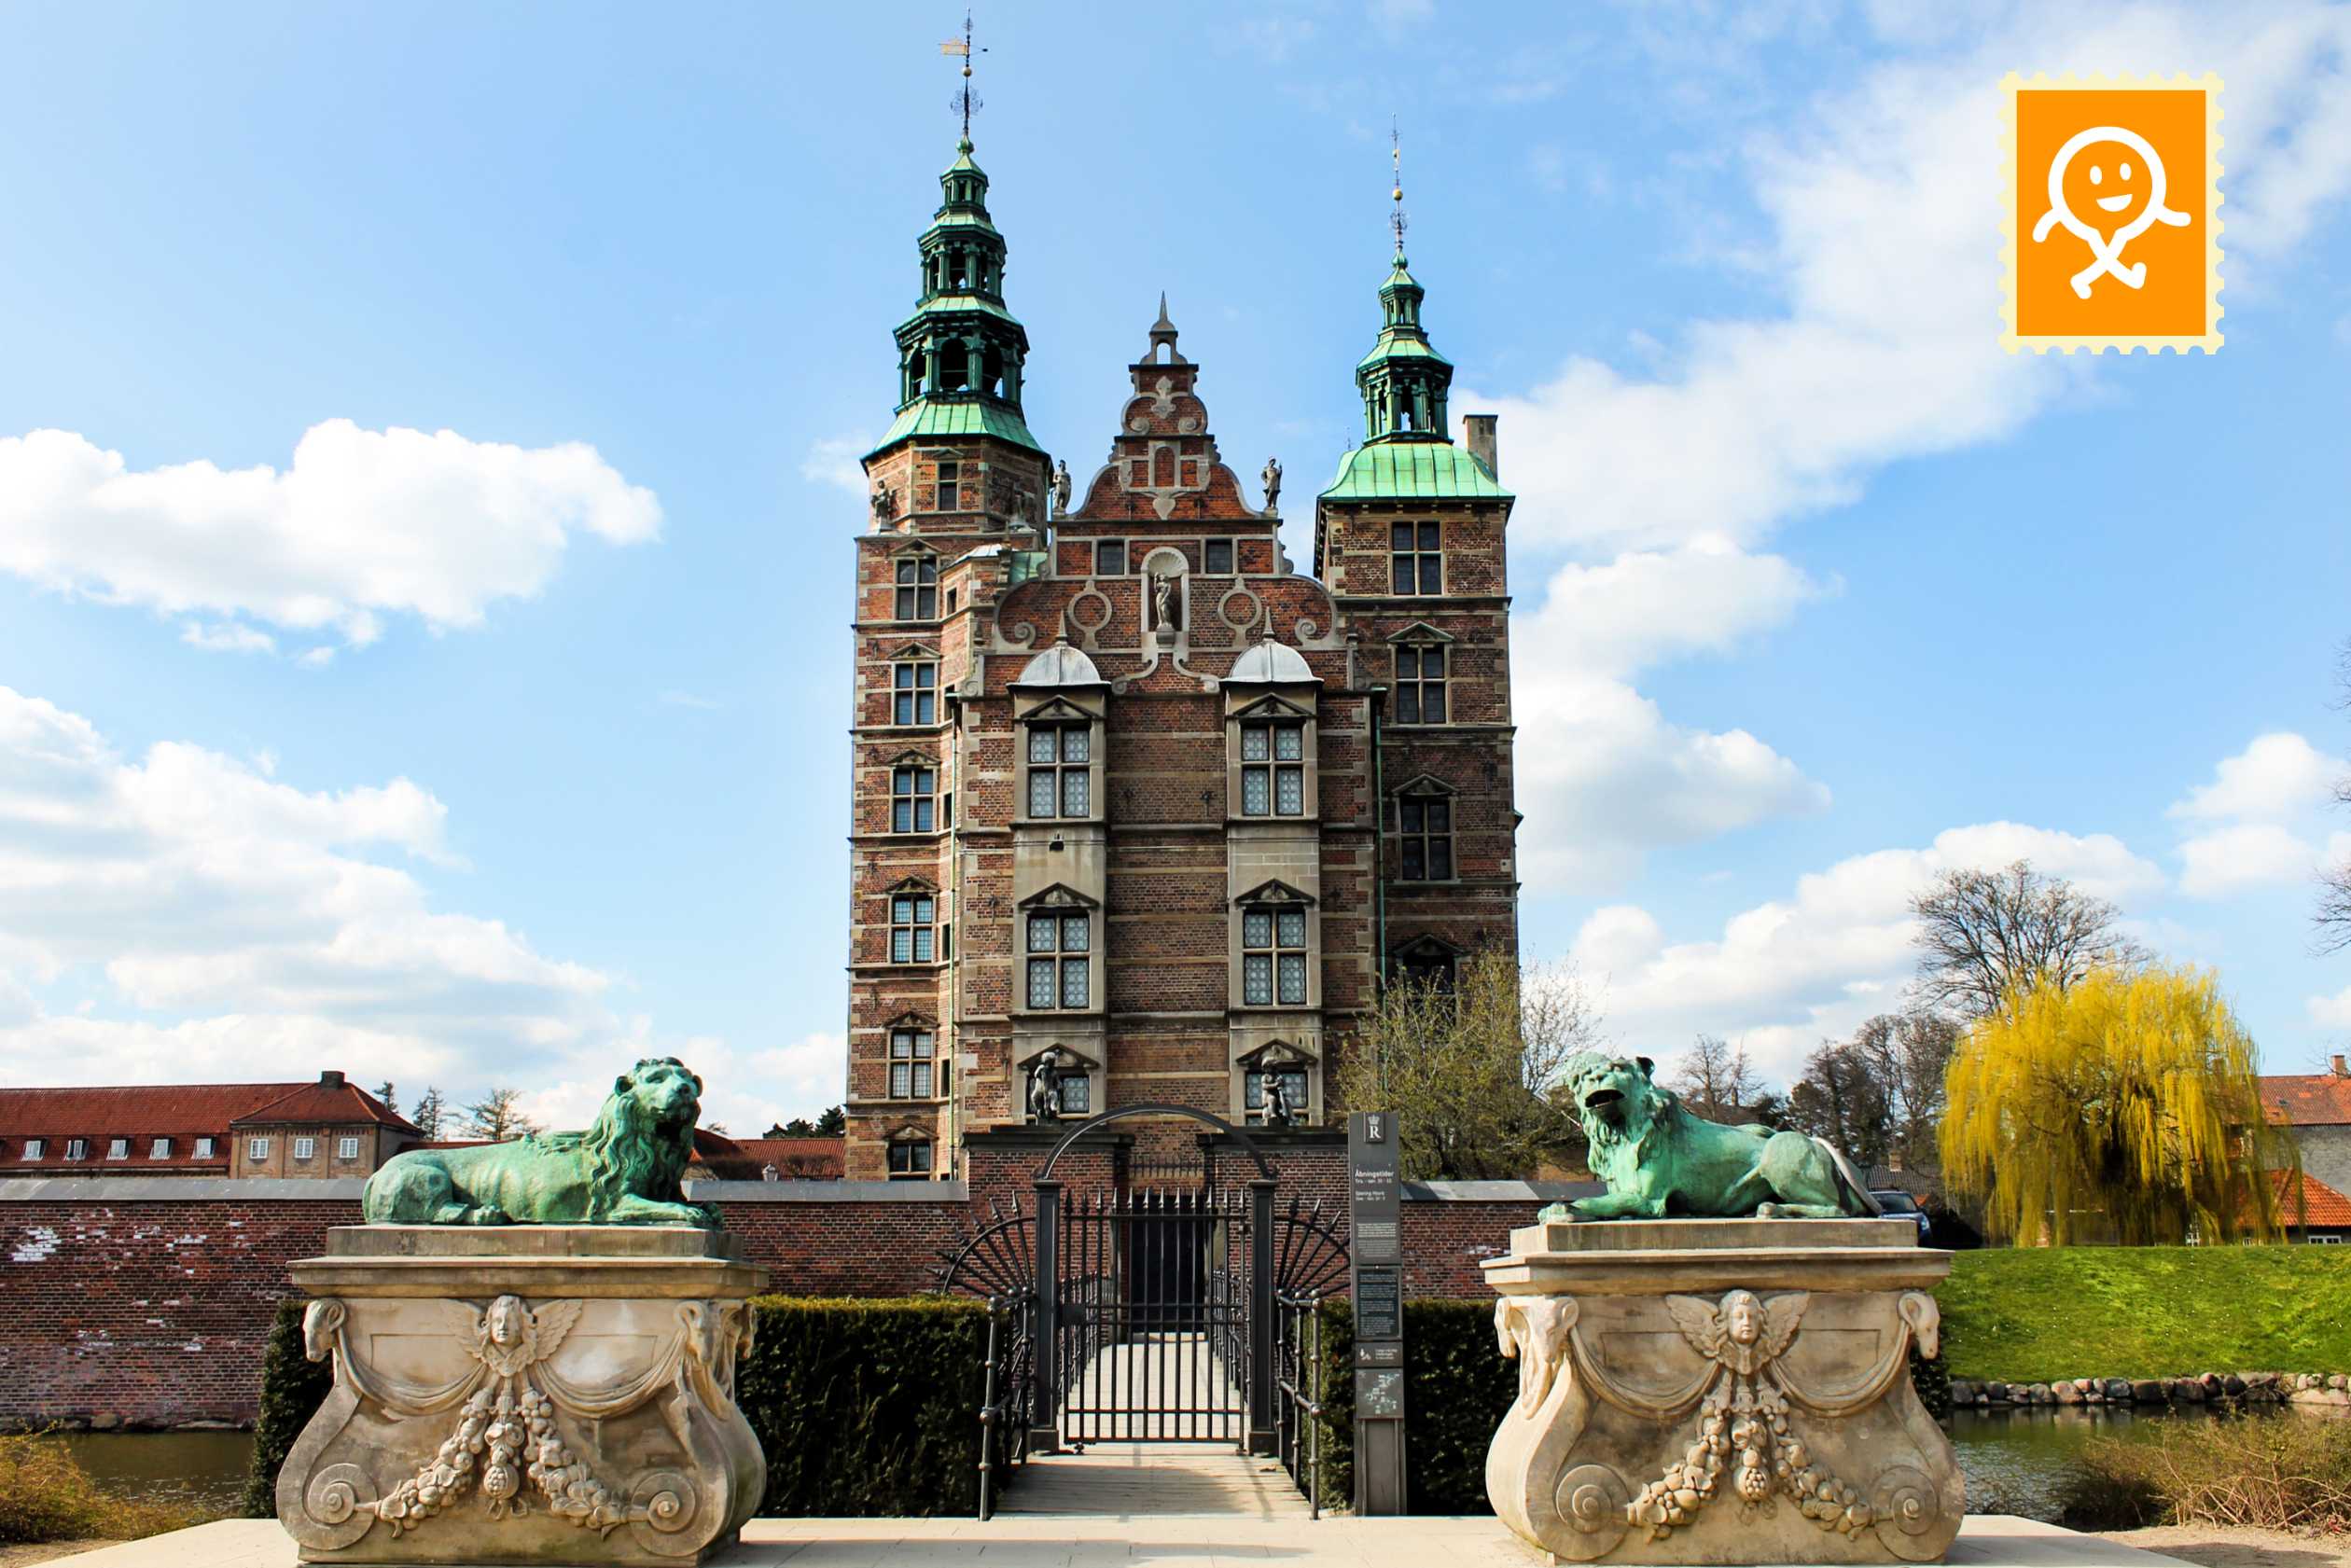 2. Rosenborg Slot